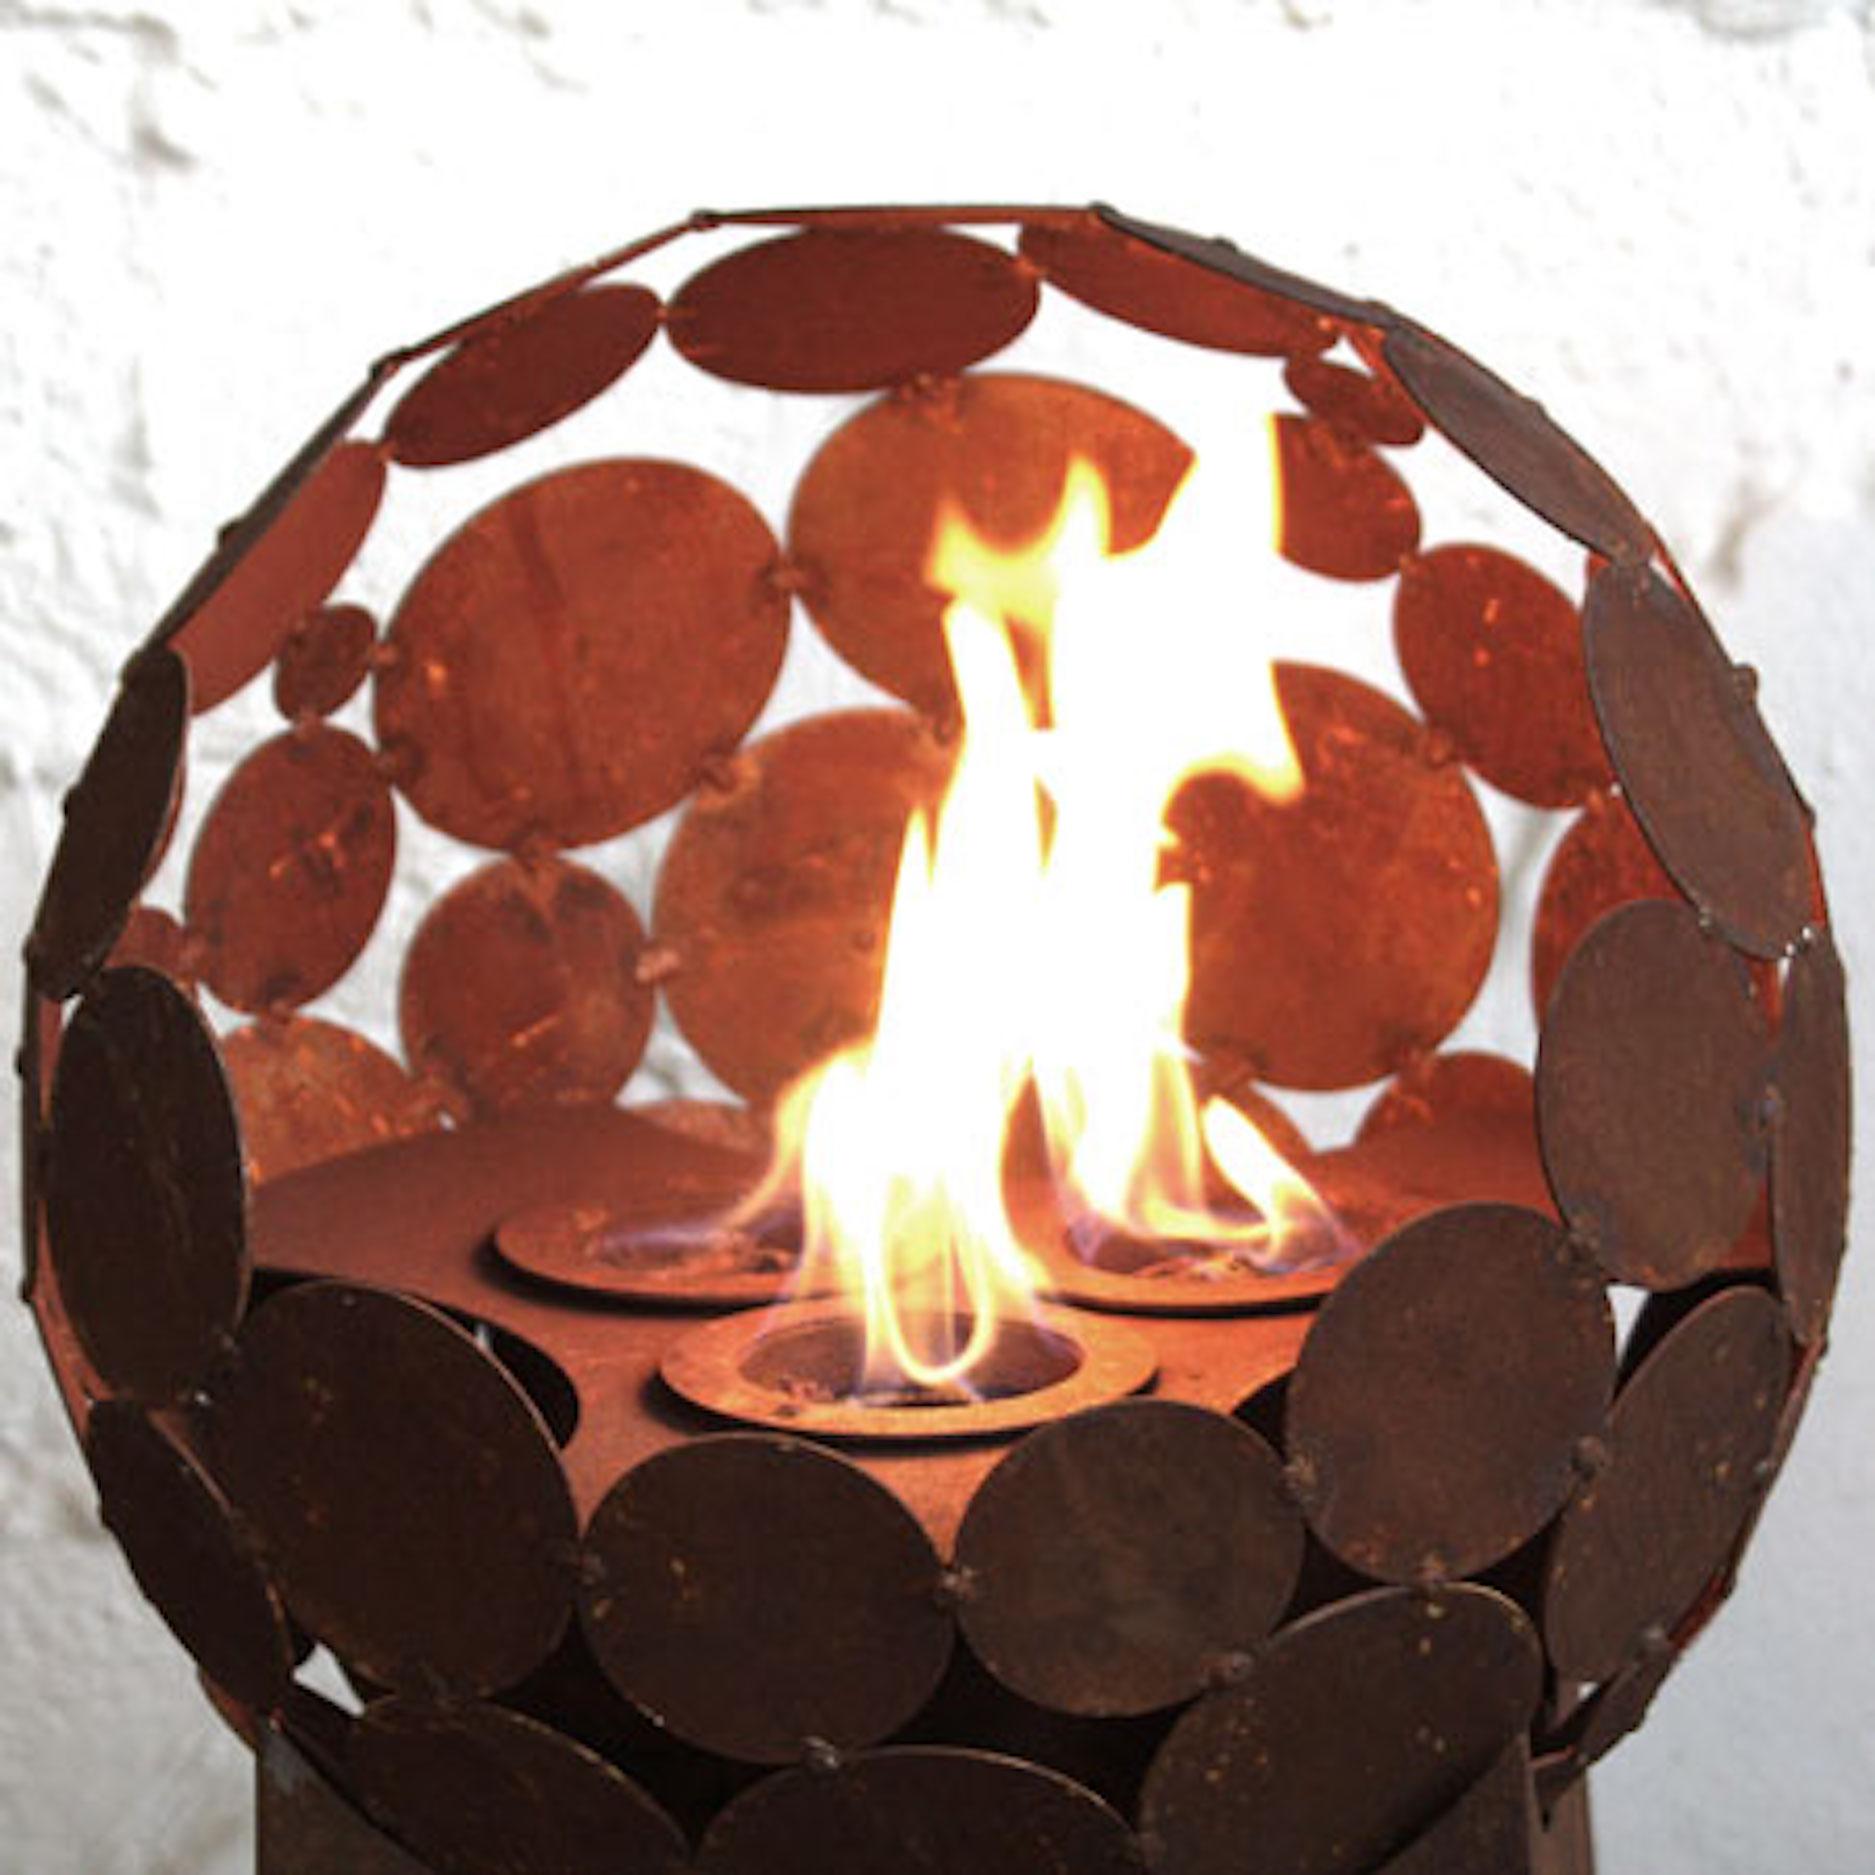 Burner set with 3 burners for Globe d=55cm - Modern Sculpture by Stefan Traloc